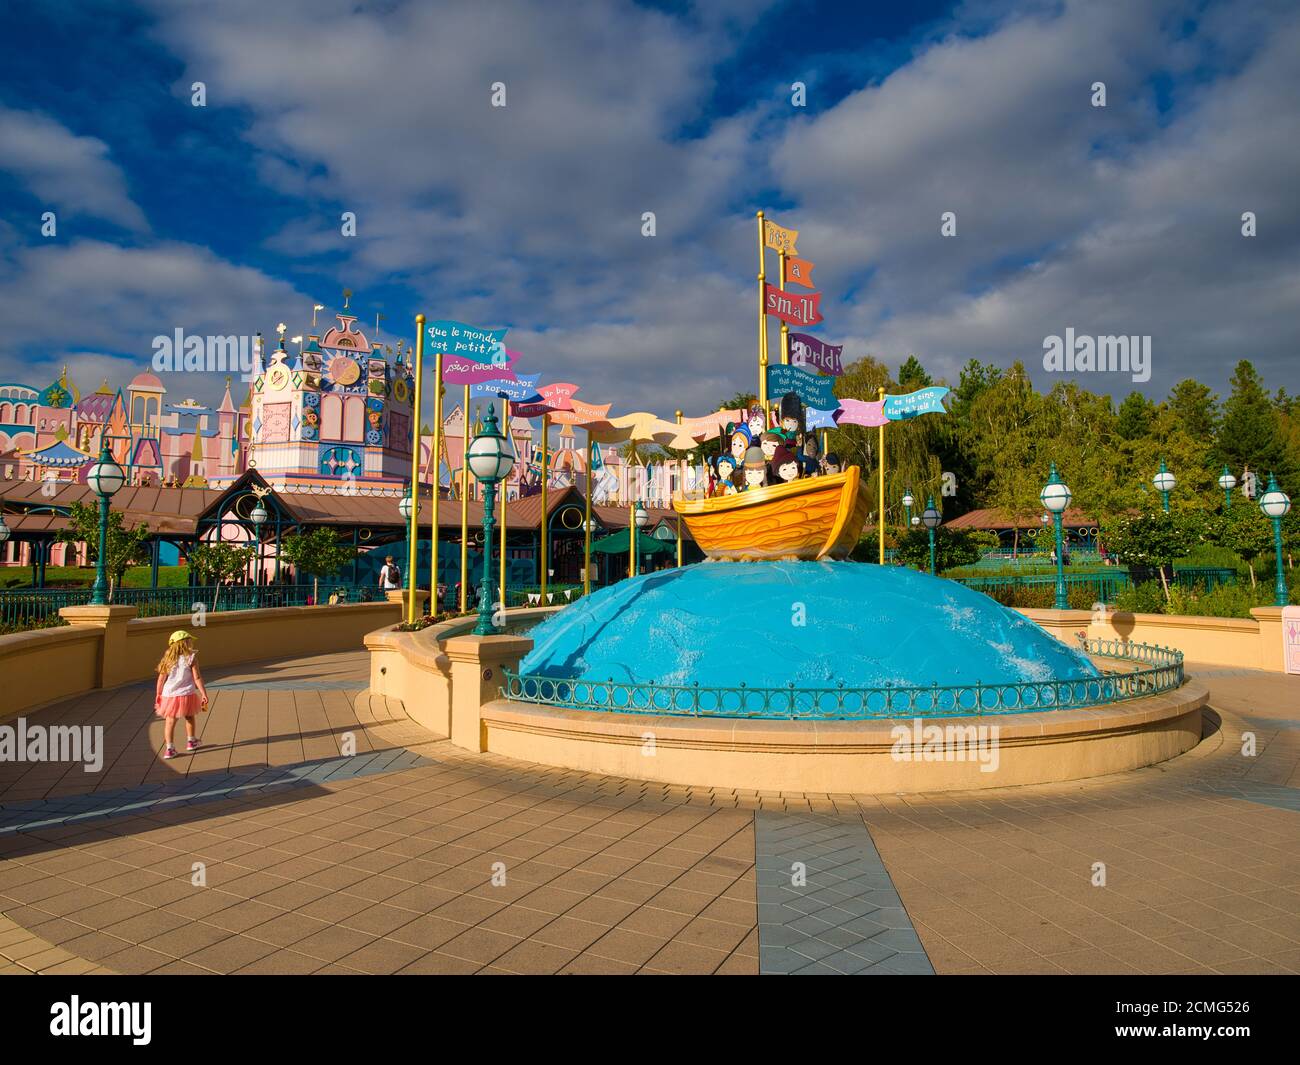 C'est un petit monde, Disneyland Paris, Marne-la-Vallée, Paris, France, Europe Banque D'Images